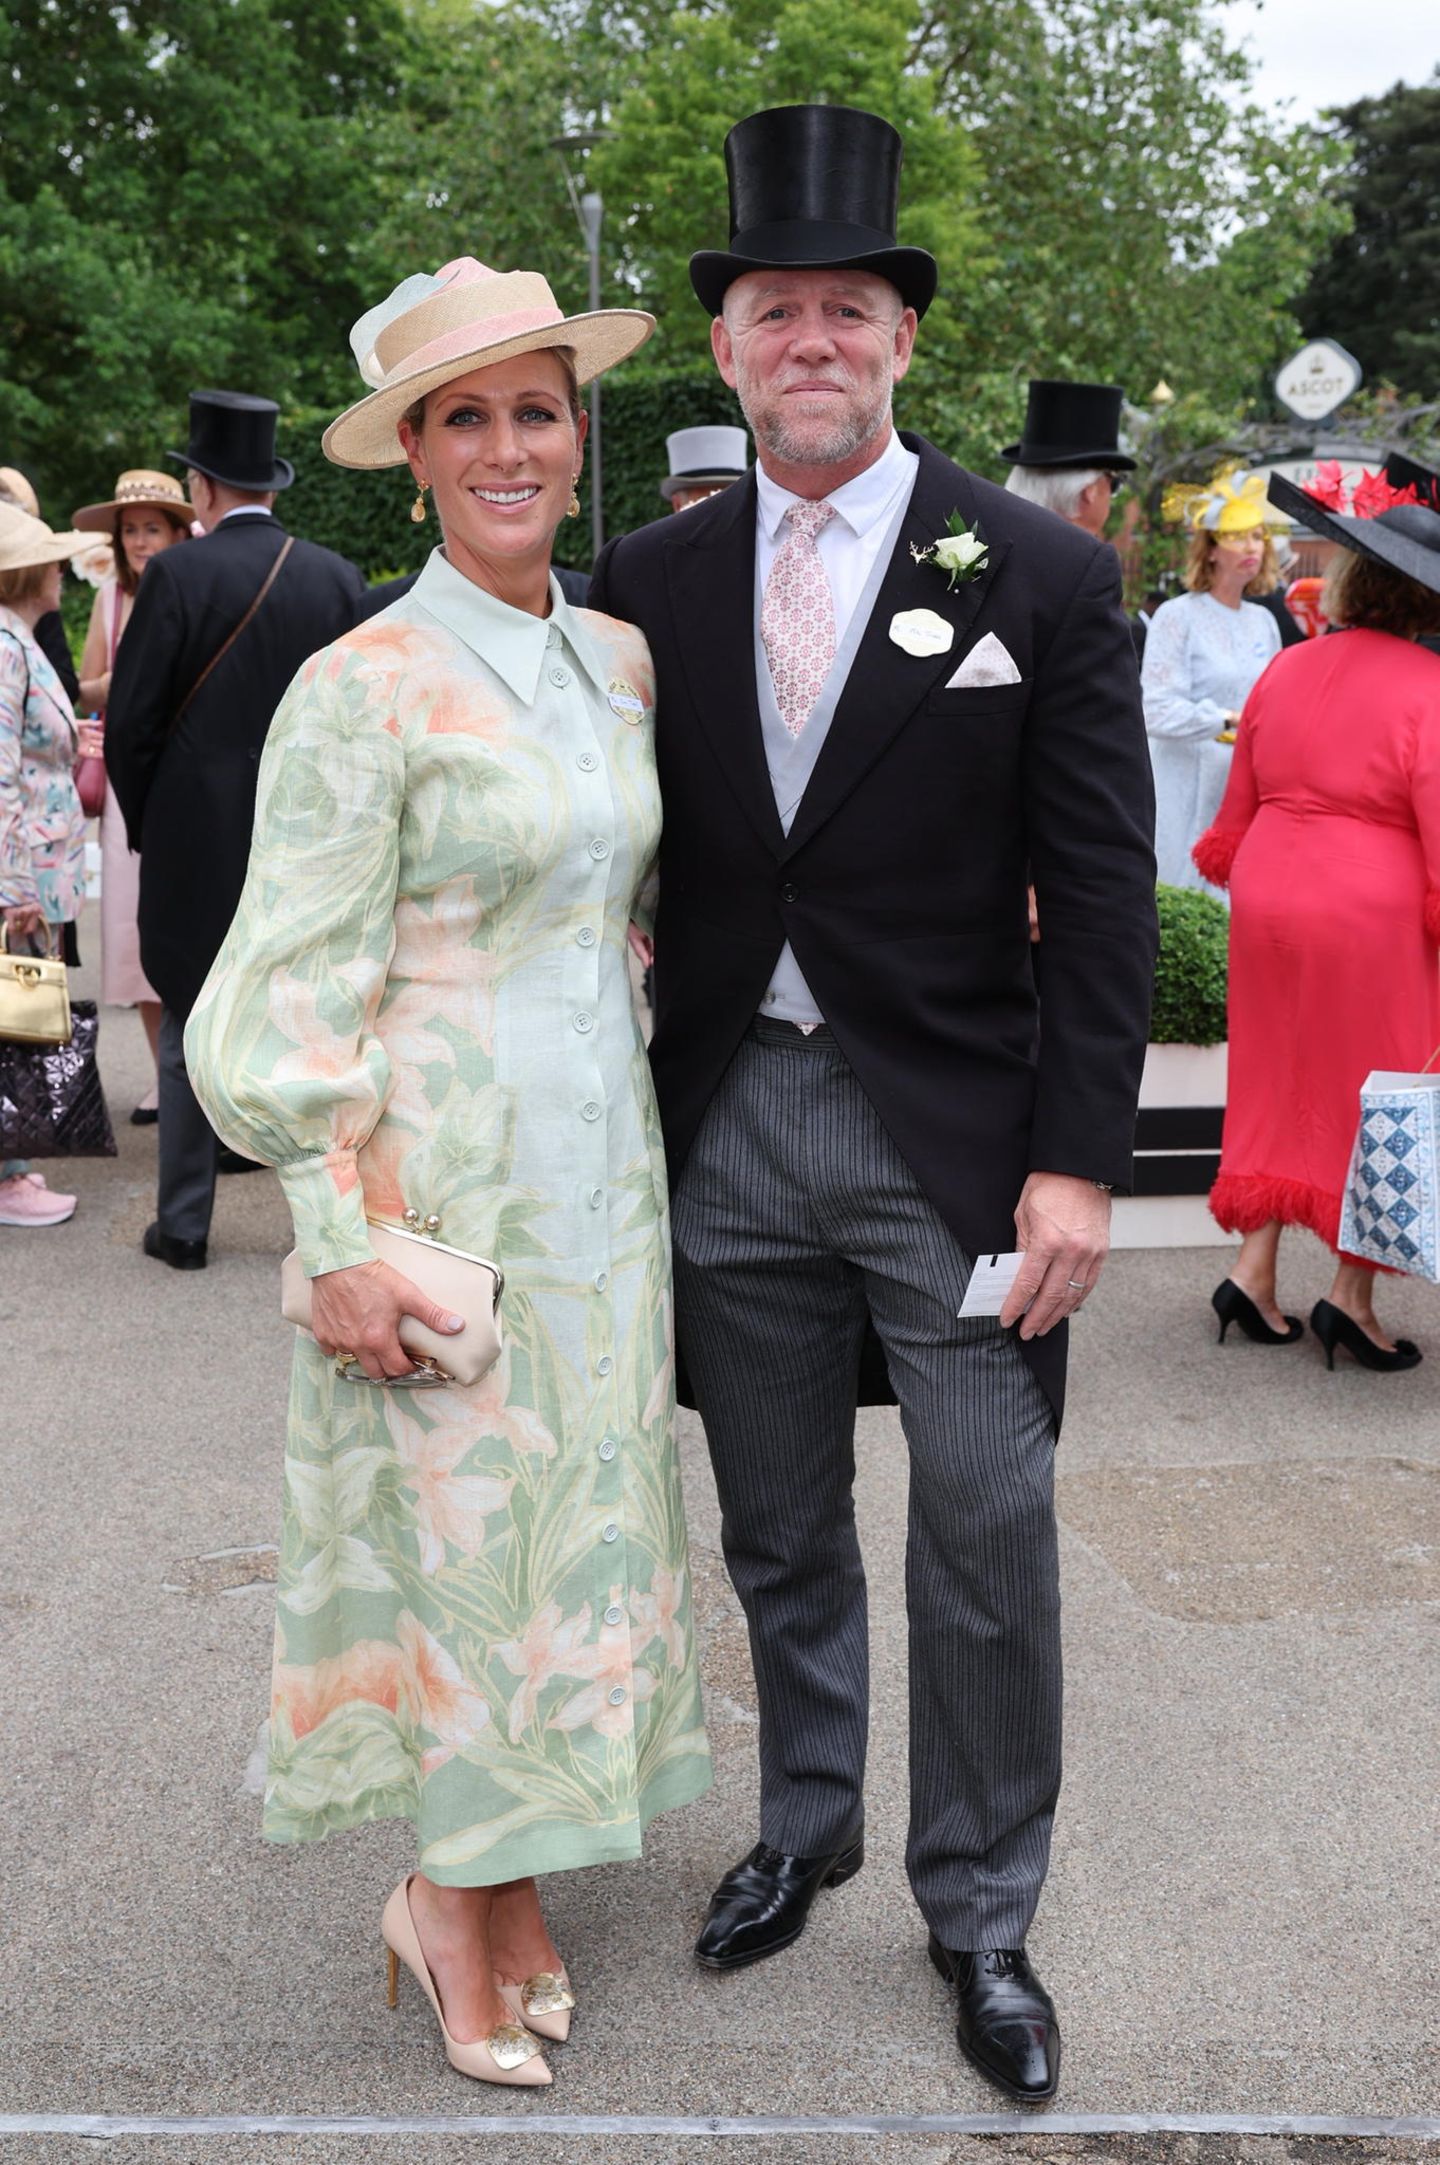 Als modische Einheit erscheinen Zara und Mike Tindall beim Royal Ascot 2023. Zara strahlt in einem eleganten Kleid mit floralem Muster von Leo Lin, das vor allem durch seine pastelligen Farben begeistert. Sommerliche Töne, auf die auch Mike Tindall mit seiner Krawatte setzt.